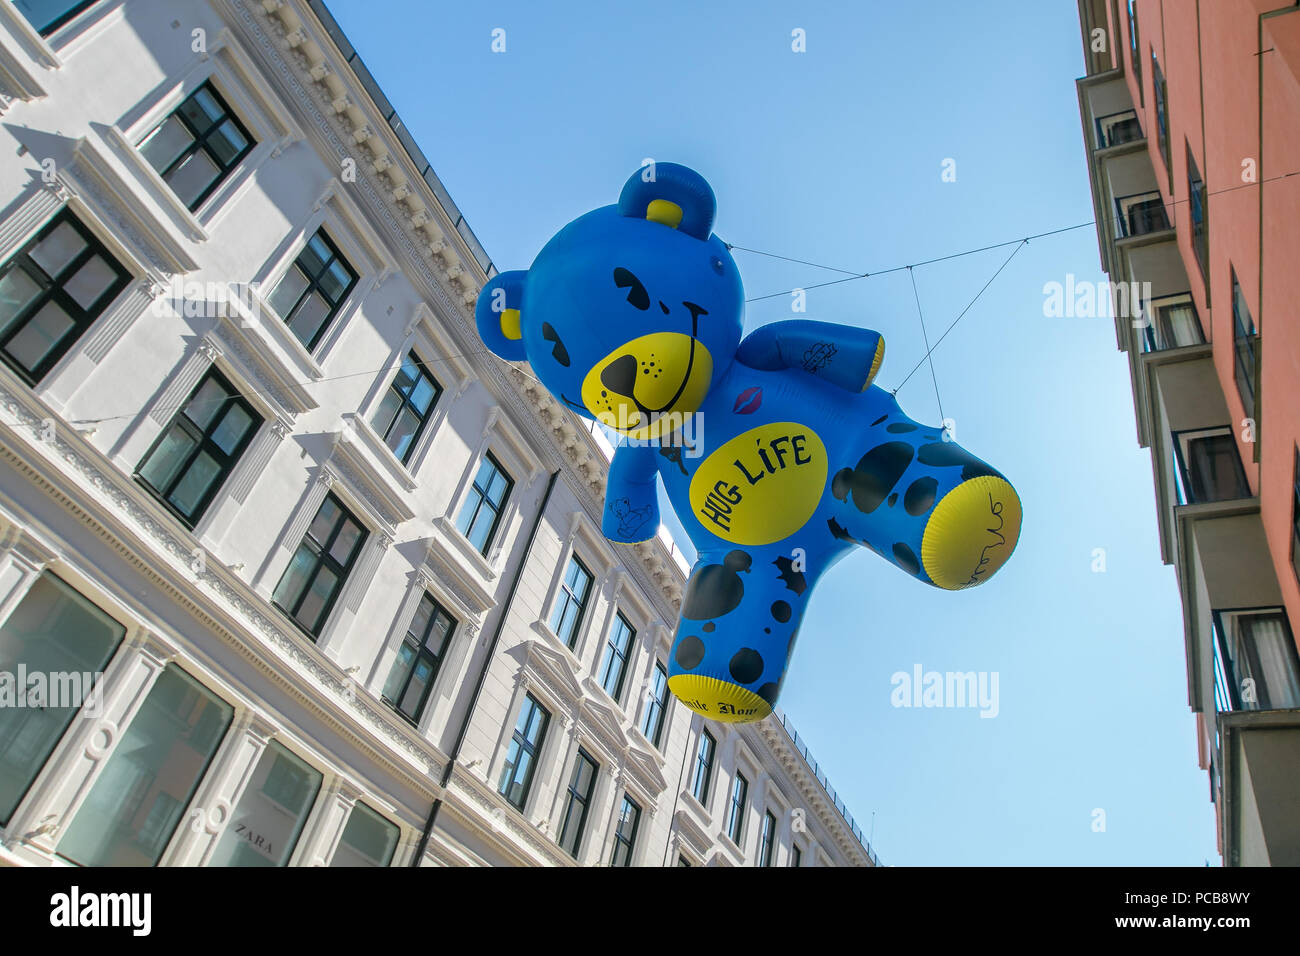 Oslo, Norvège, le 21 juillet 2018 : 'Hug Life' - installation d'art colorées d'artistes norvégiens BROSLO - gonflable géant nounours en suspension dans l'air. Banque D'Images